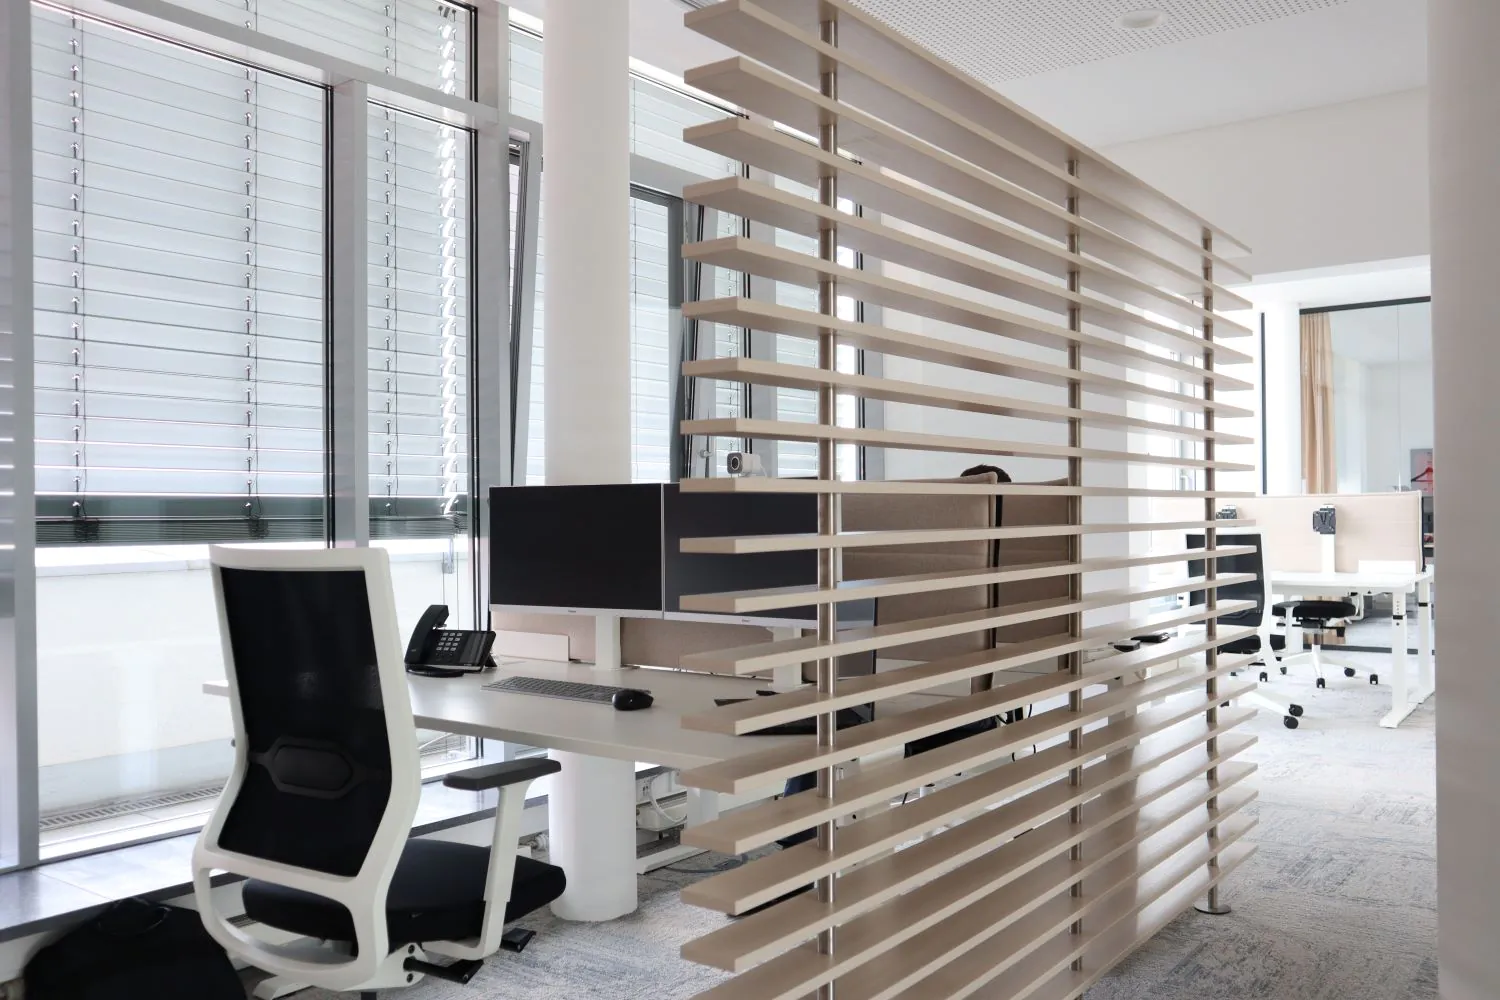 offener Büroraum durch Holzpaneele abgetrennte Rückansicht leerer Arbeitsplätze